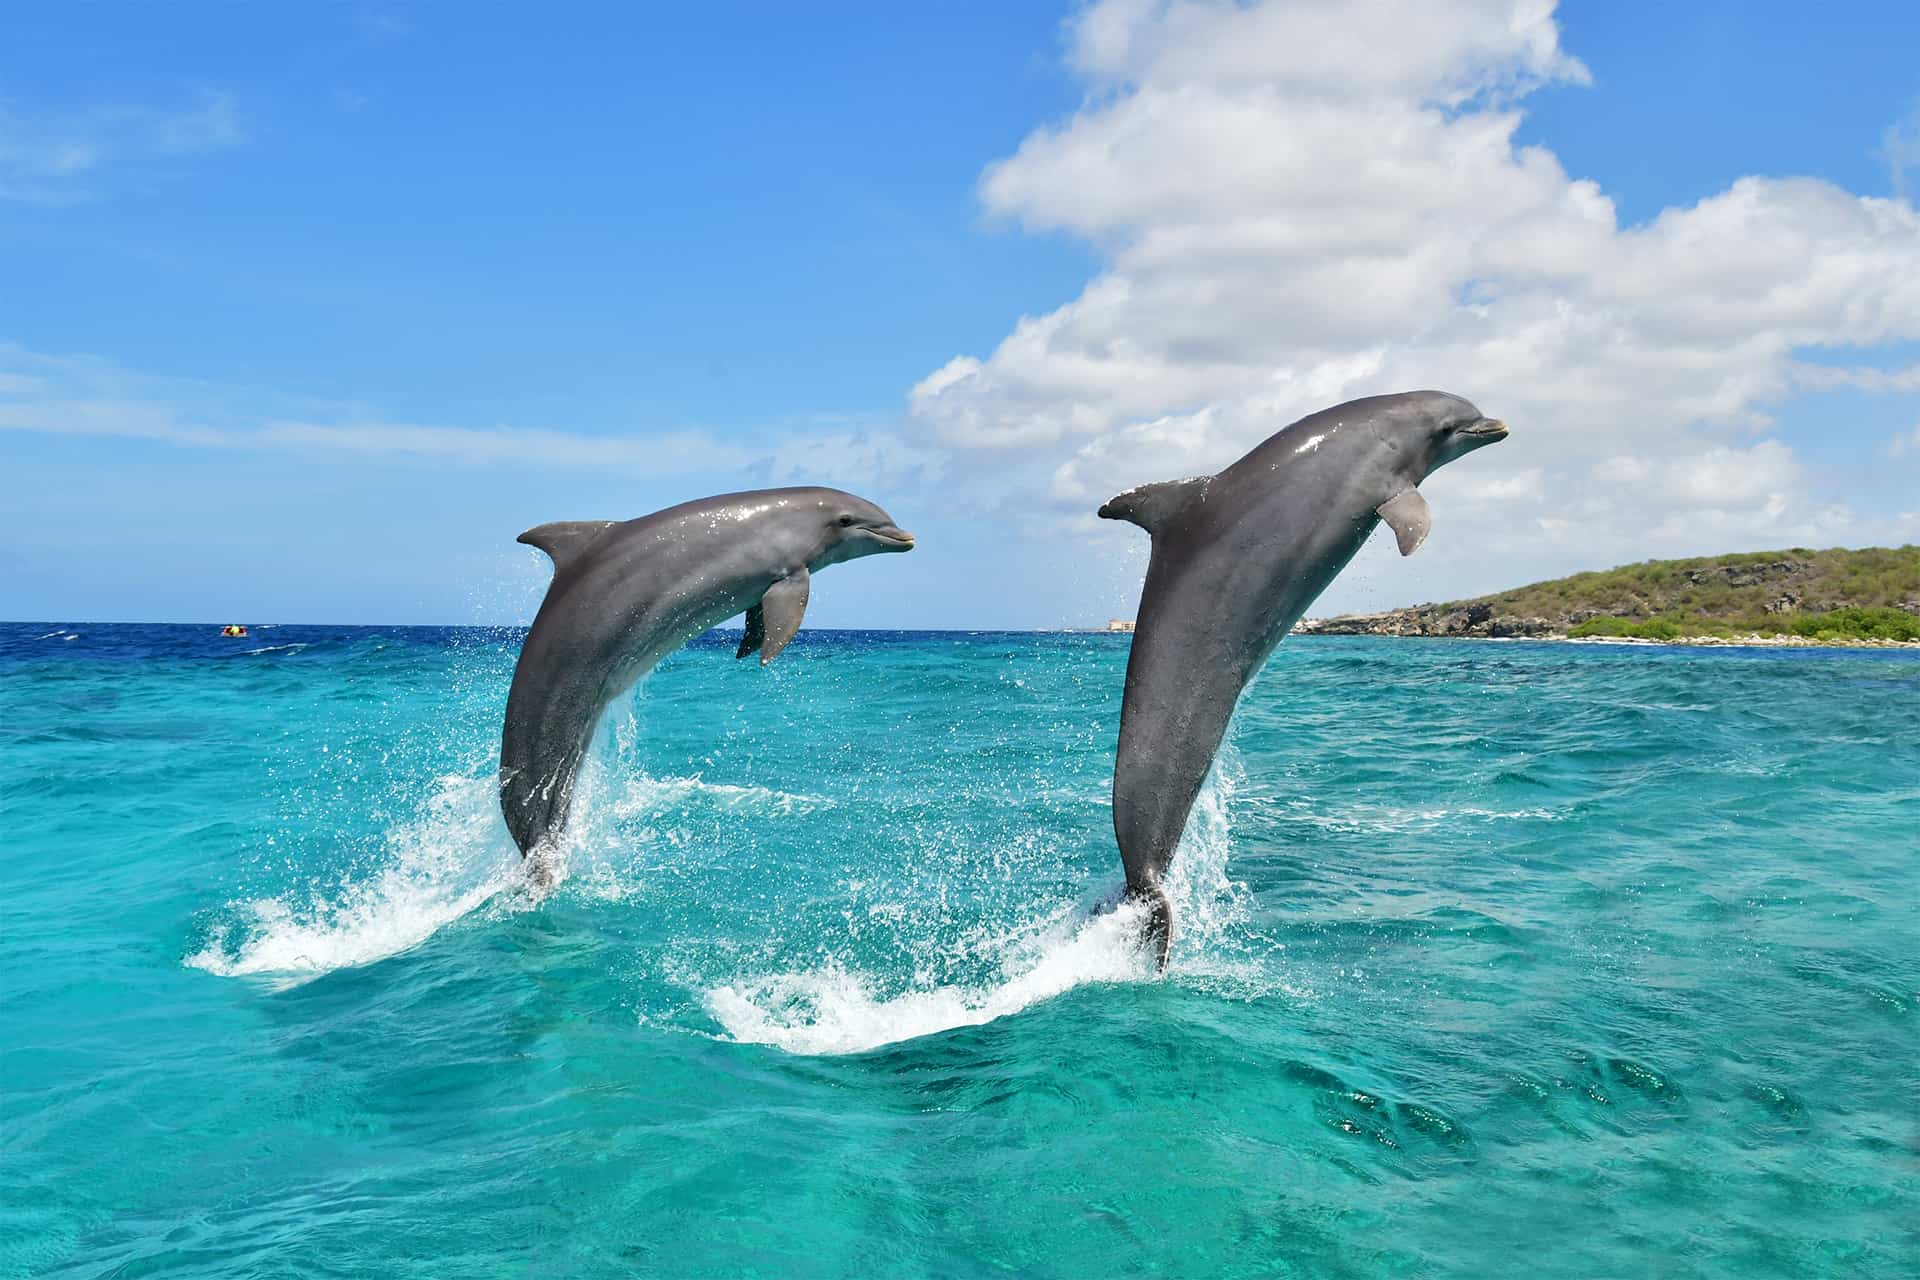 Dos delfines saltando del mar en la academia de delfines de Curaçao.